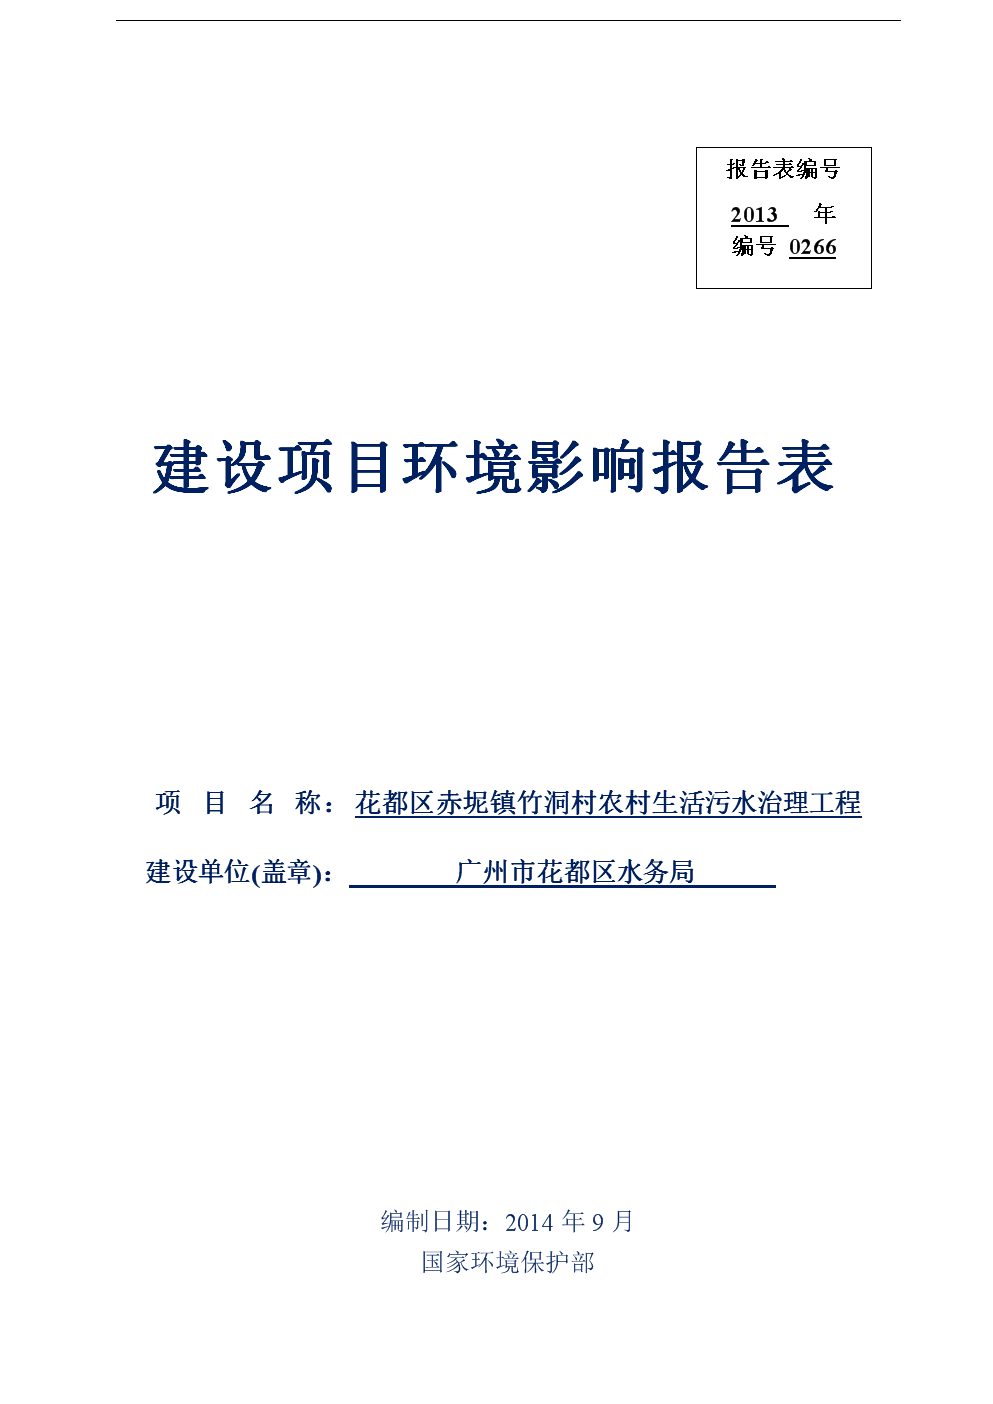 20nba竞猜官网17年广州威达仕厨房设备制造有限公司报告表(盖章)